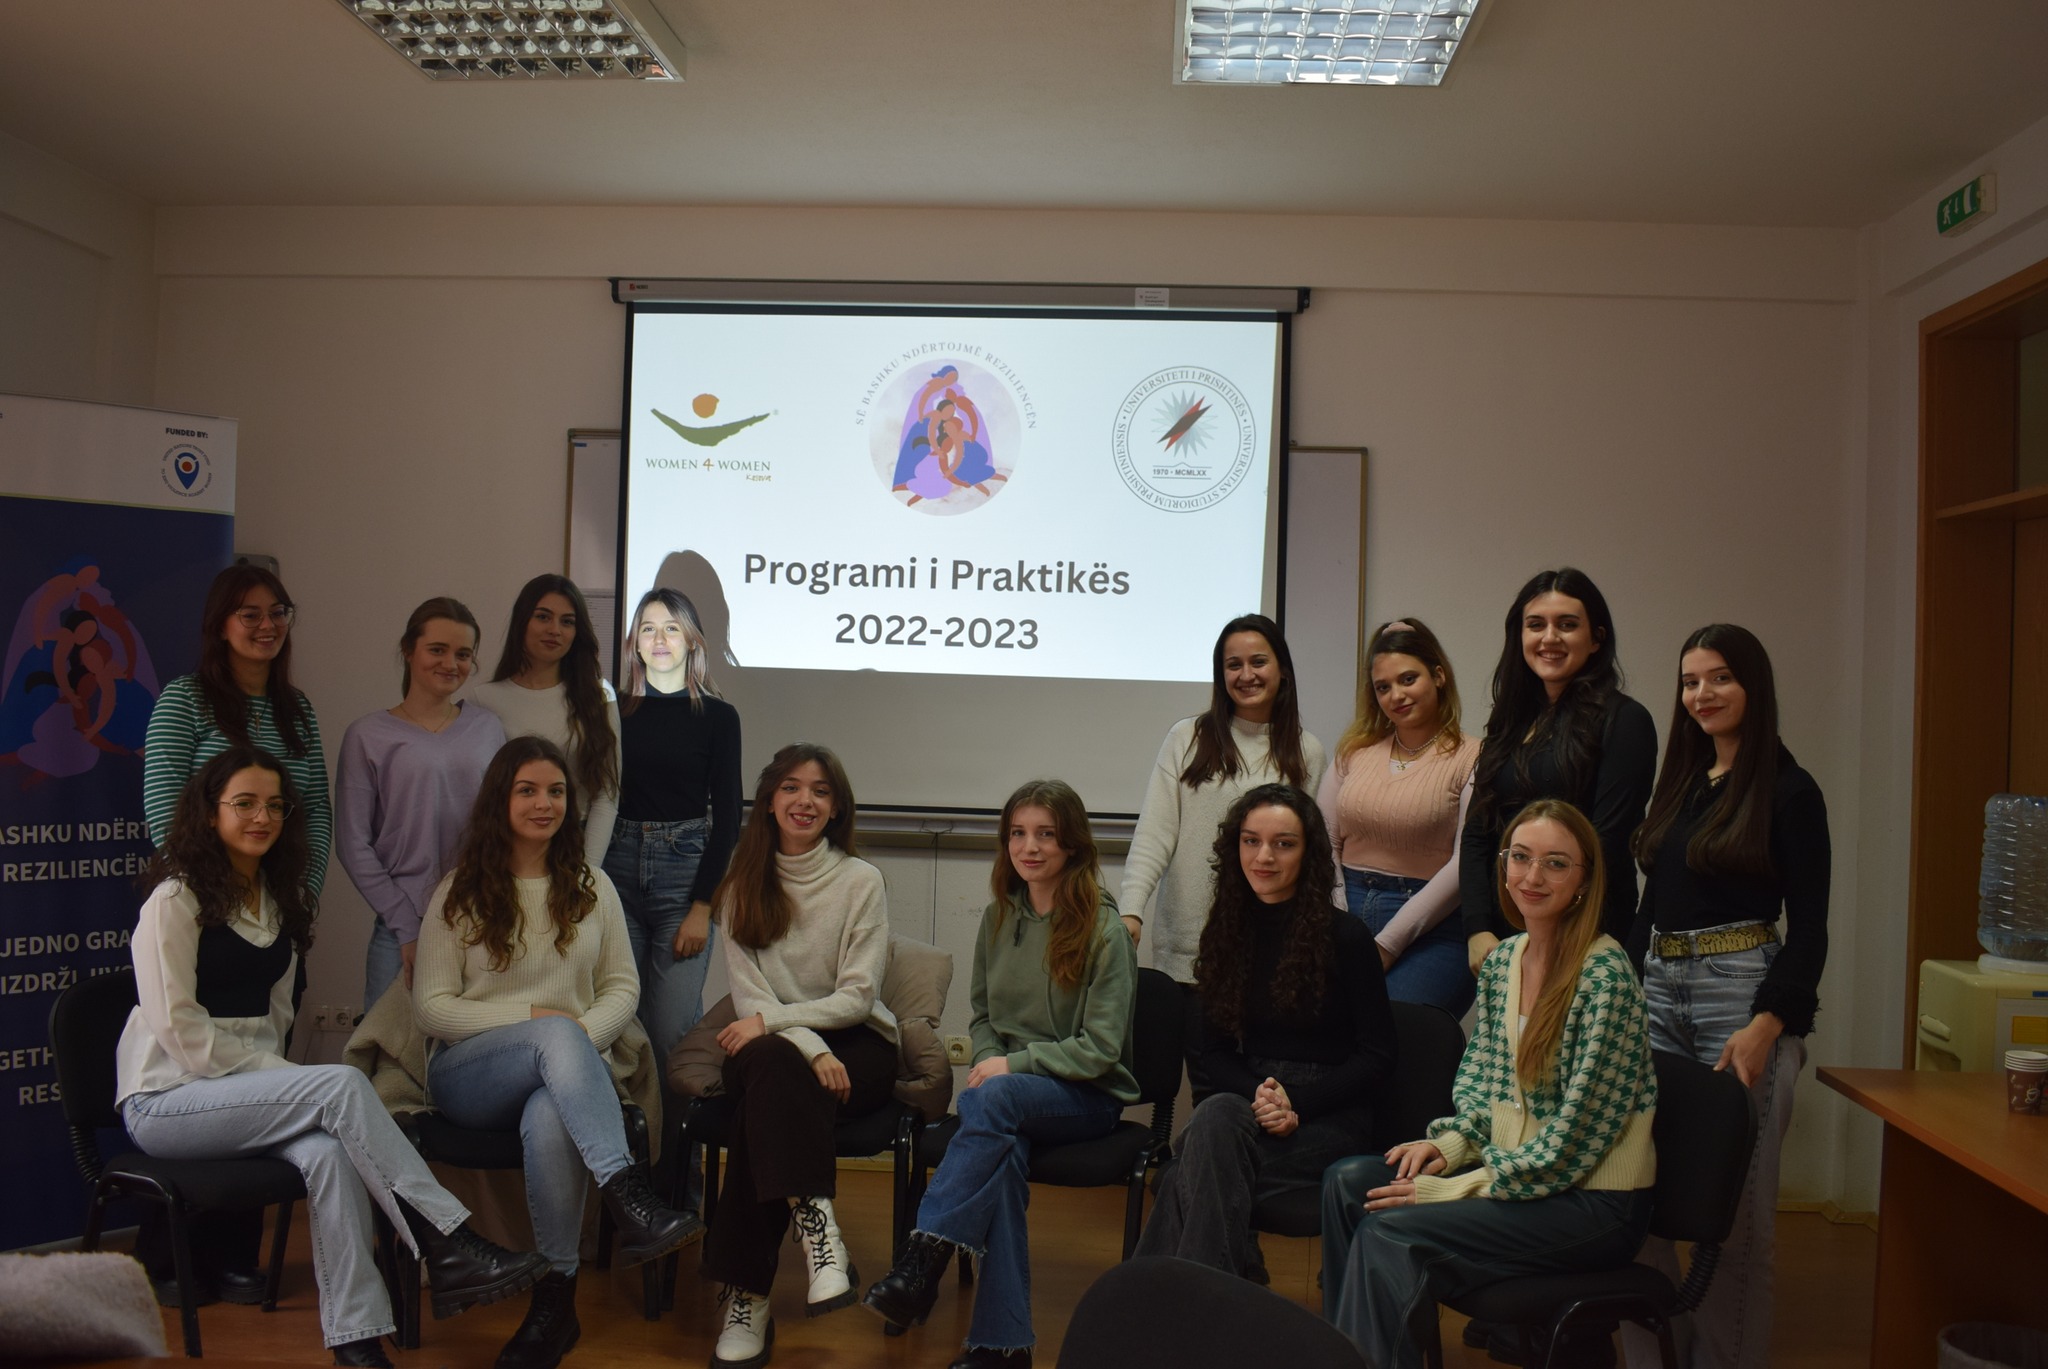 Javën që shkoi, 18 studentë nga Departamenti i Psikologjisë, UP, përfunduan praktikën 6-javore në Kosova – Women 4 Women